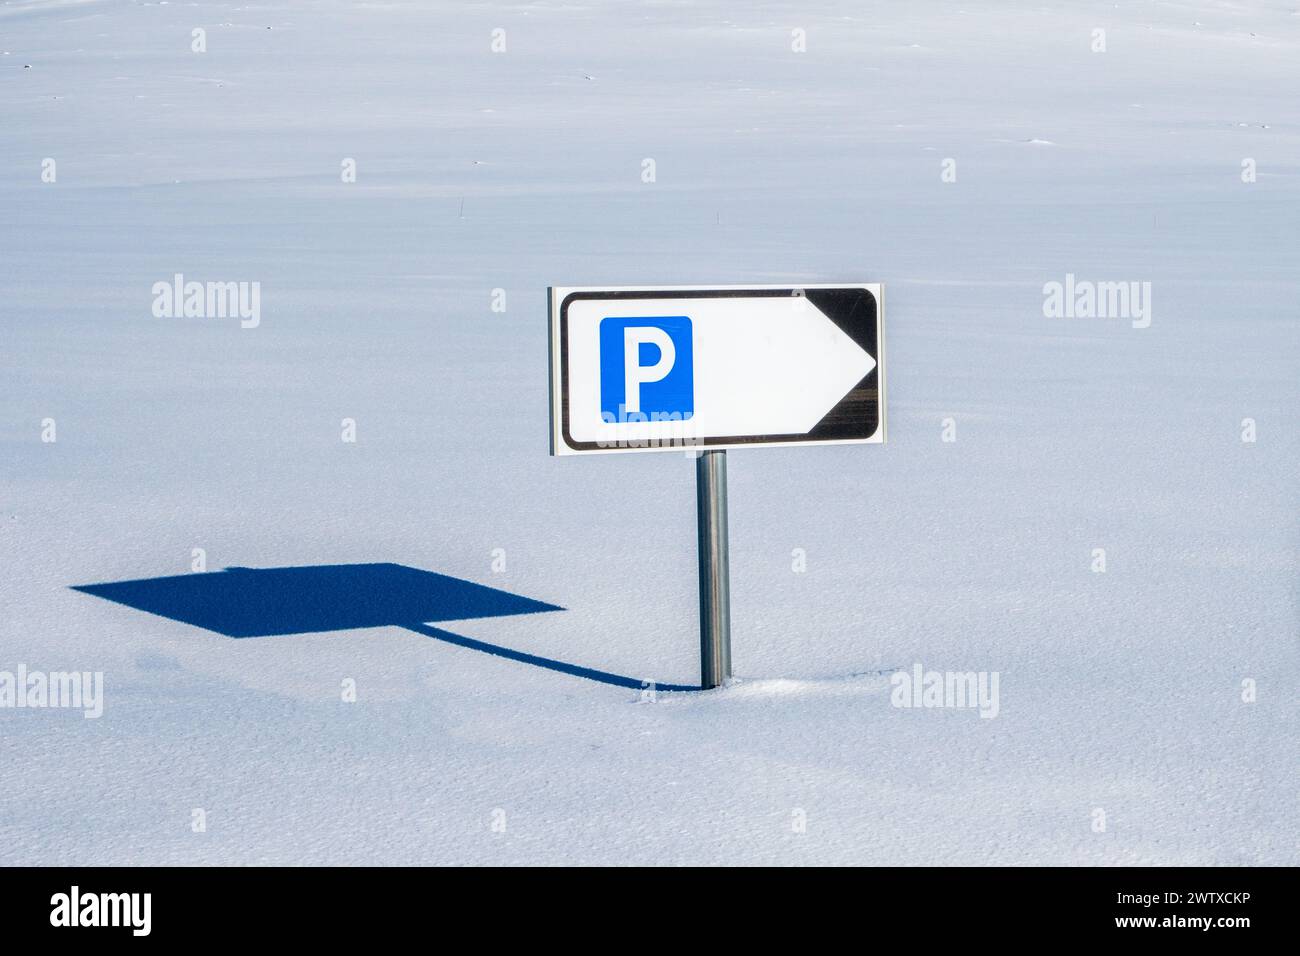 Un panneau de signalisation de stationnement sortant de la neige profonde sur une route enfouie sous la neige en Norvège Banque D'Images